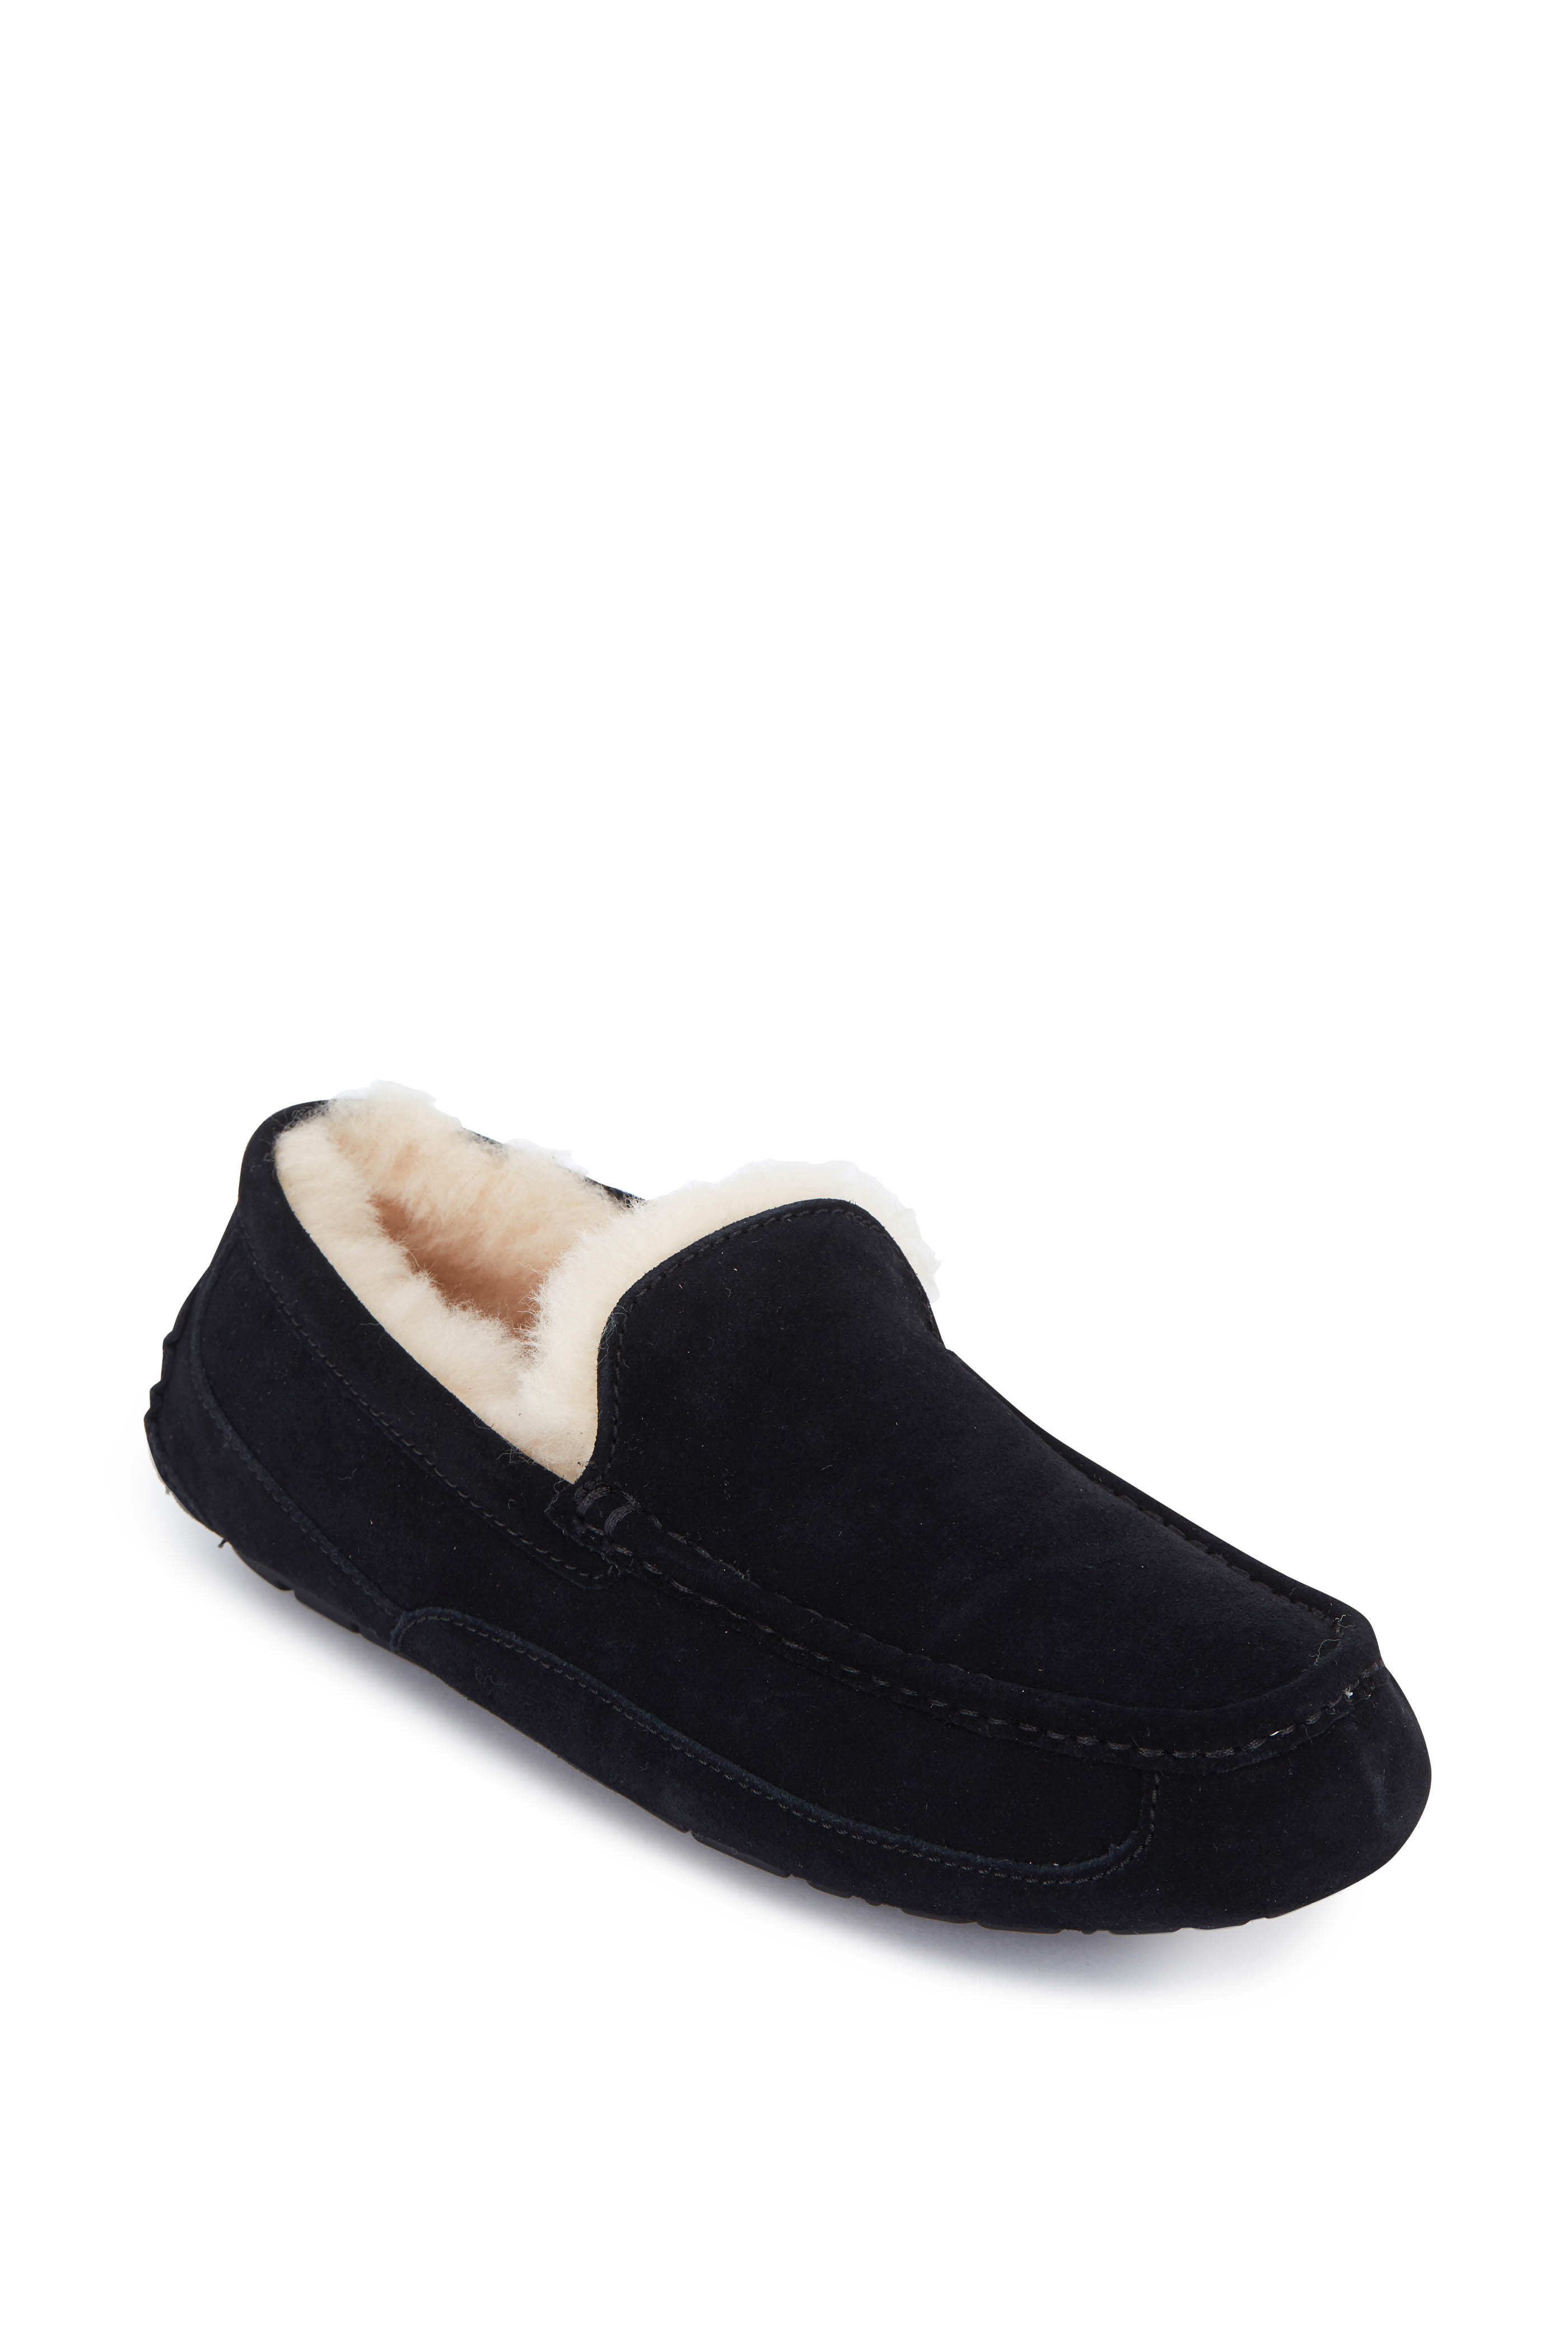 ascot all black slipper